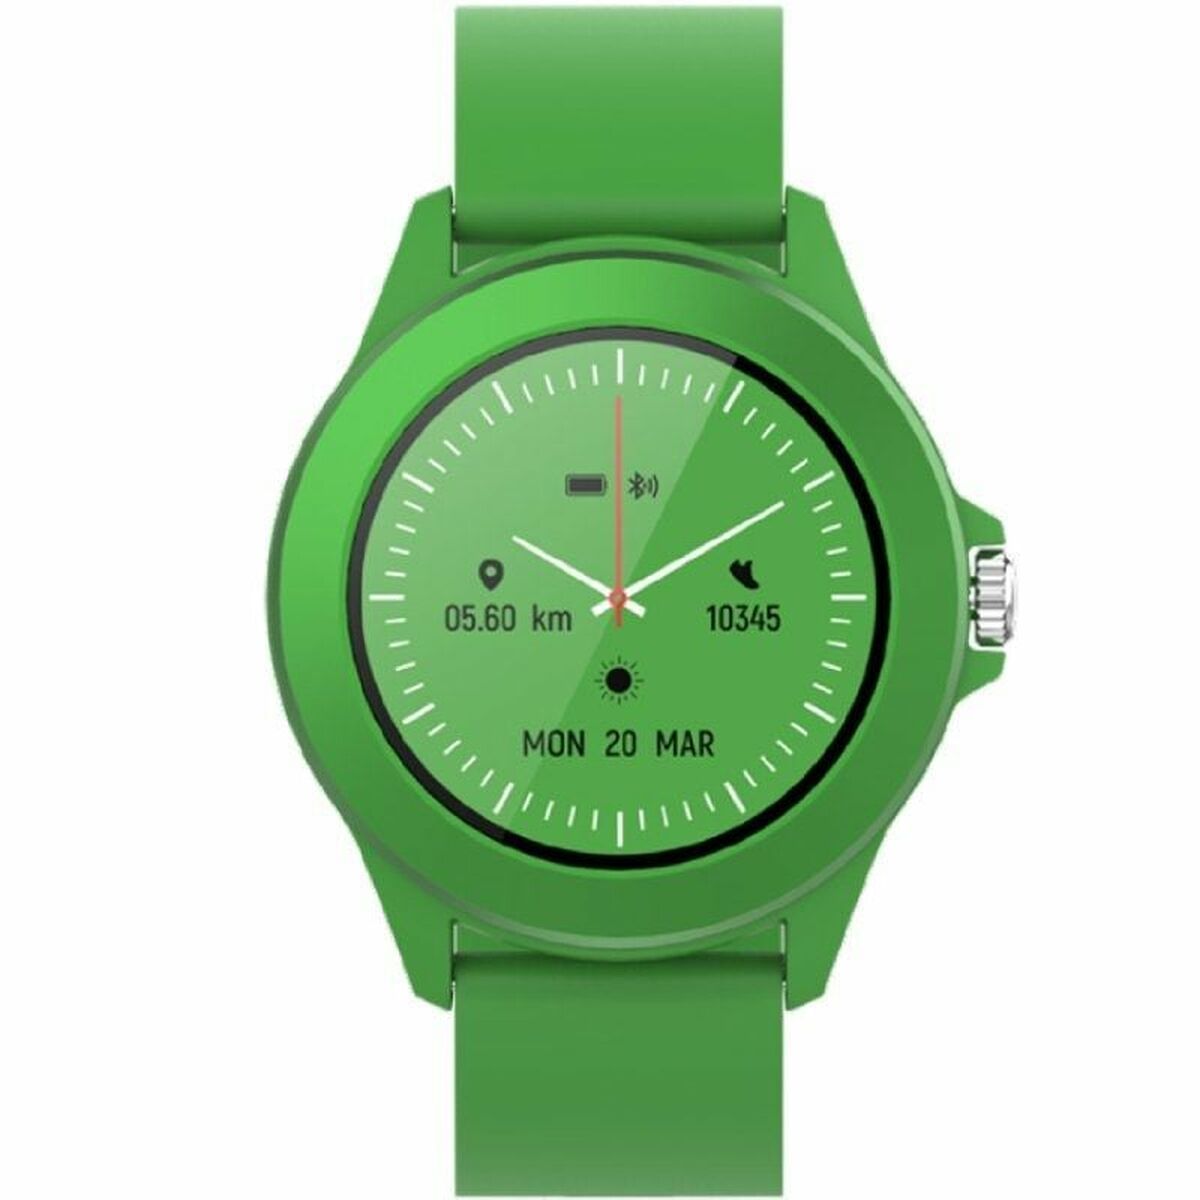 Smartwatch Forever CW-300 grün - CA International 